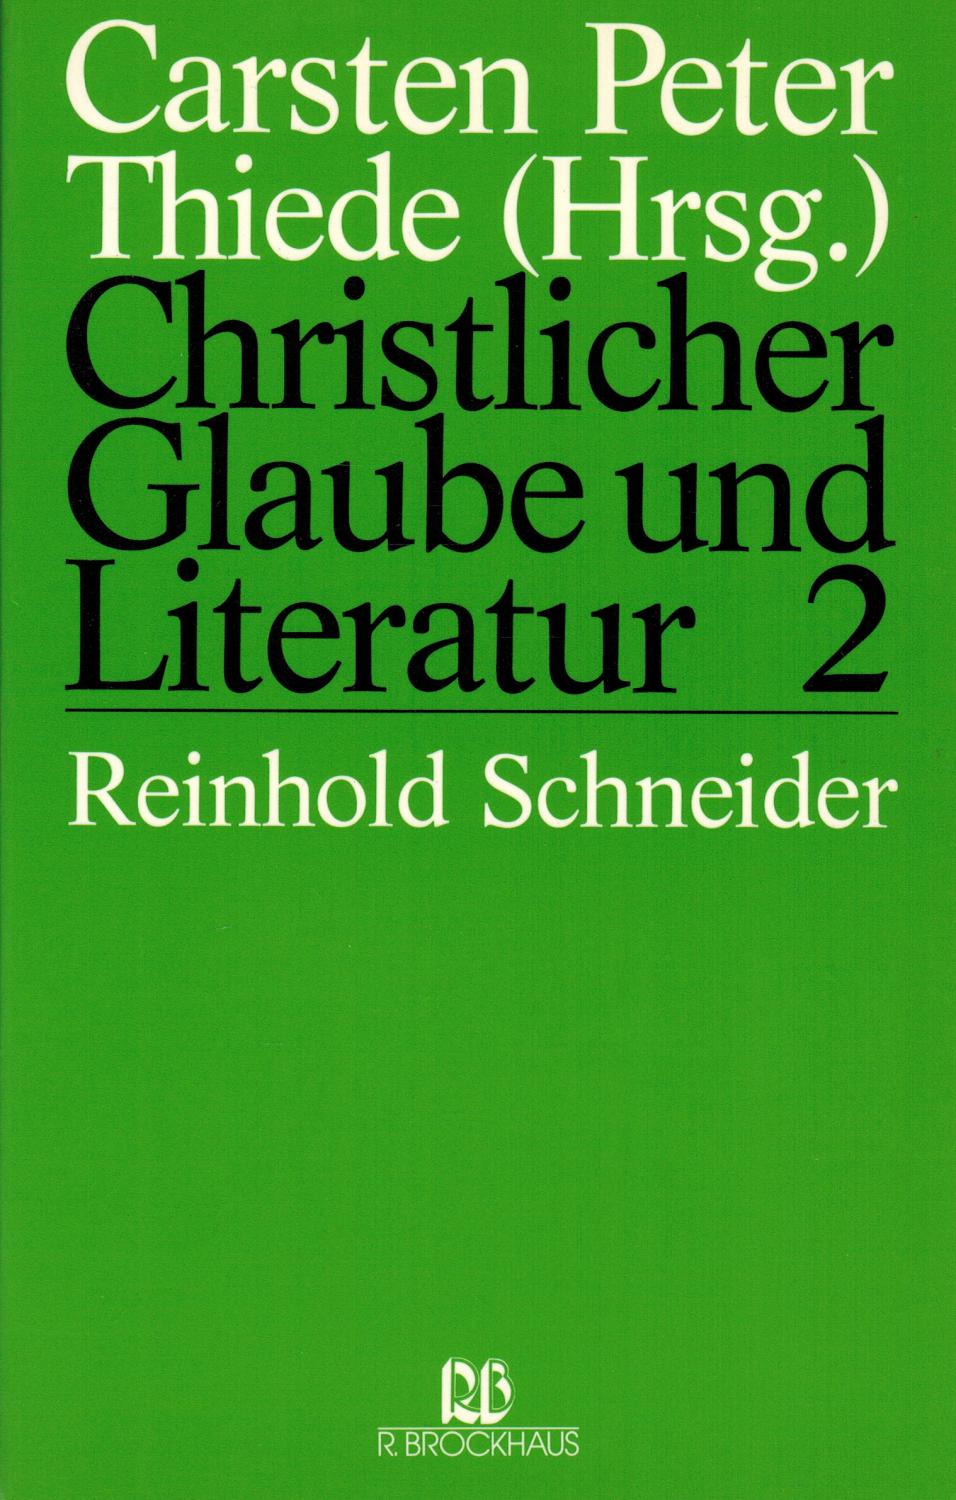 Christlicher Glaube und Literatur: Reinhold Schneider - Thiede, Carsten Peter